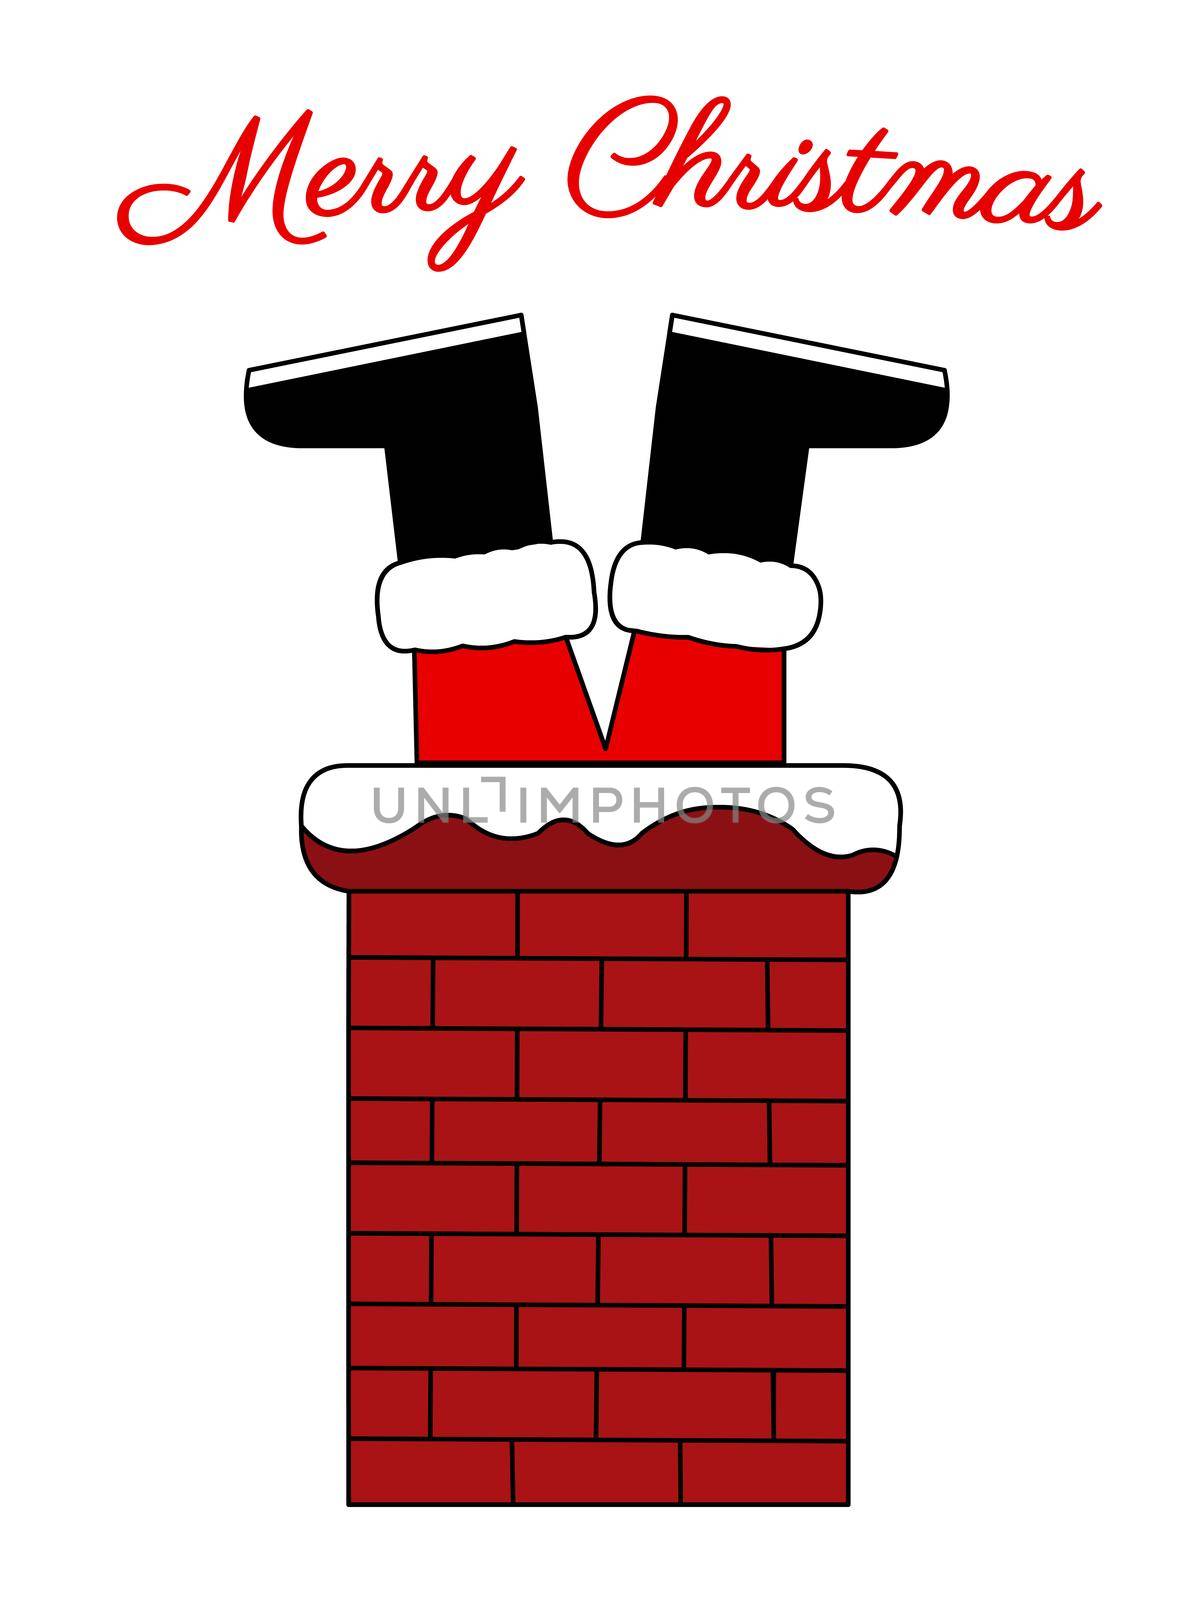 Santa stuck in a chimney by Bigalbaloo